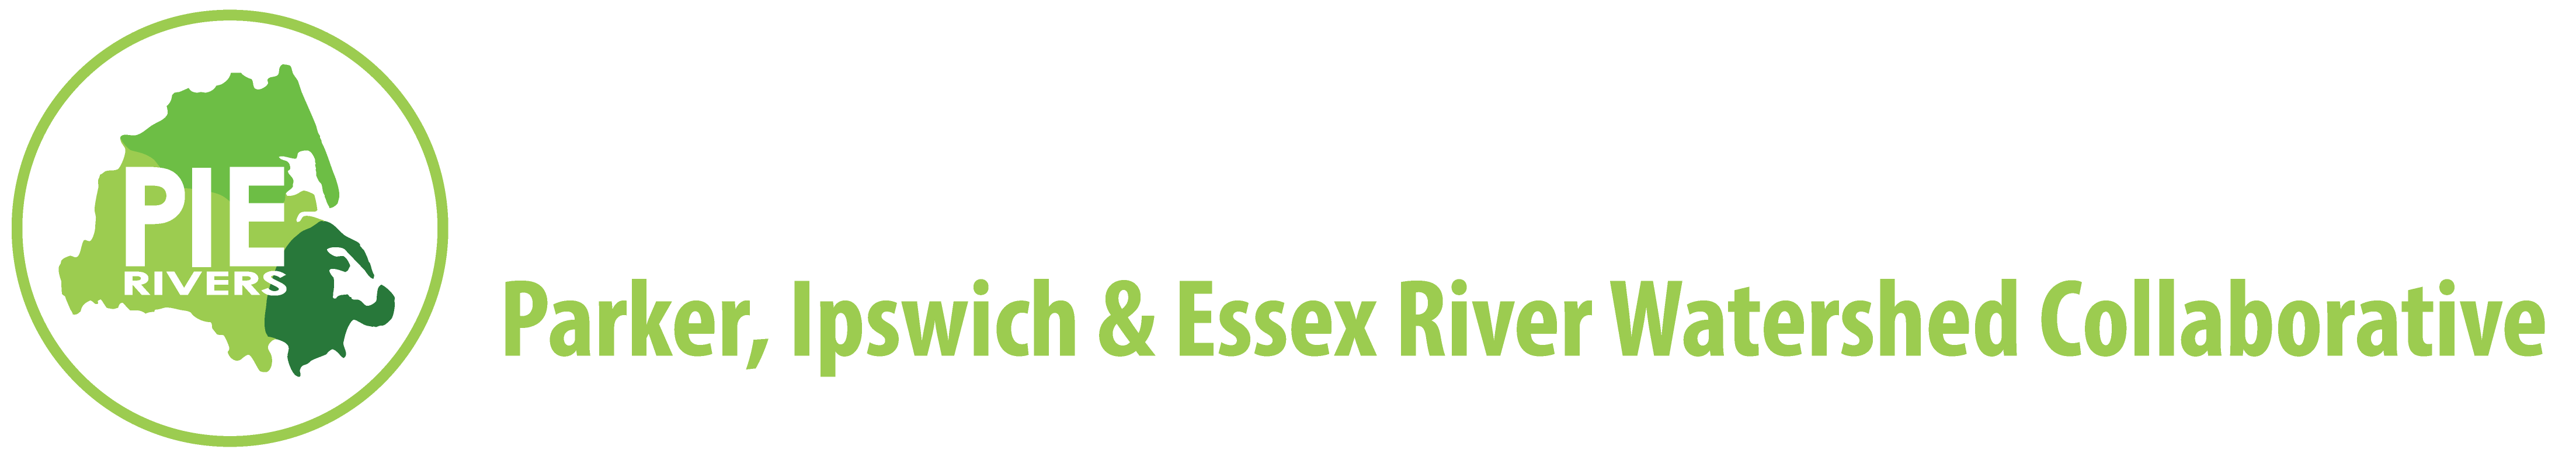 PIE-Rivers Partnership